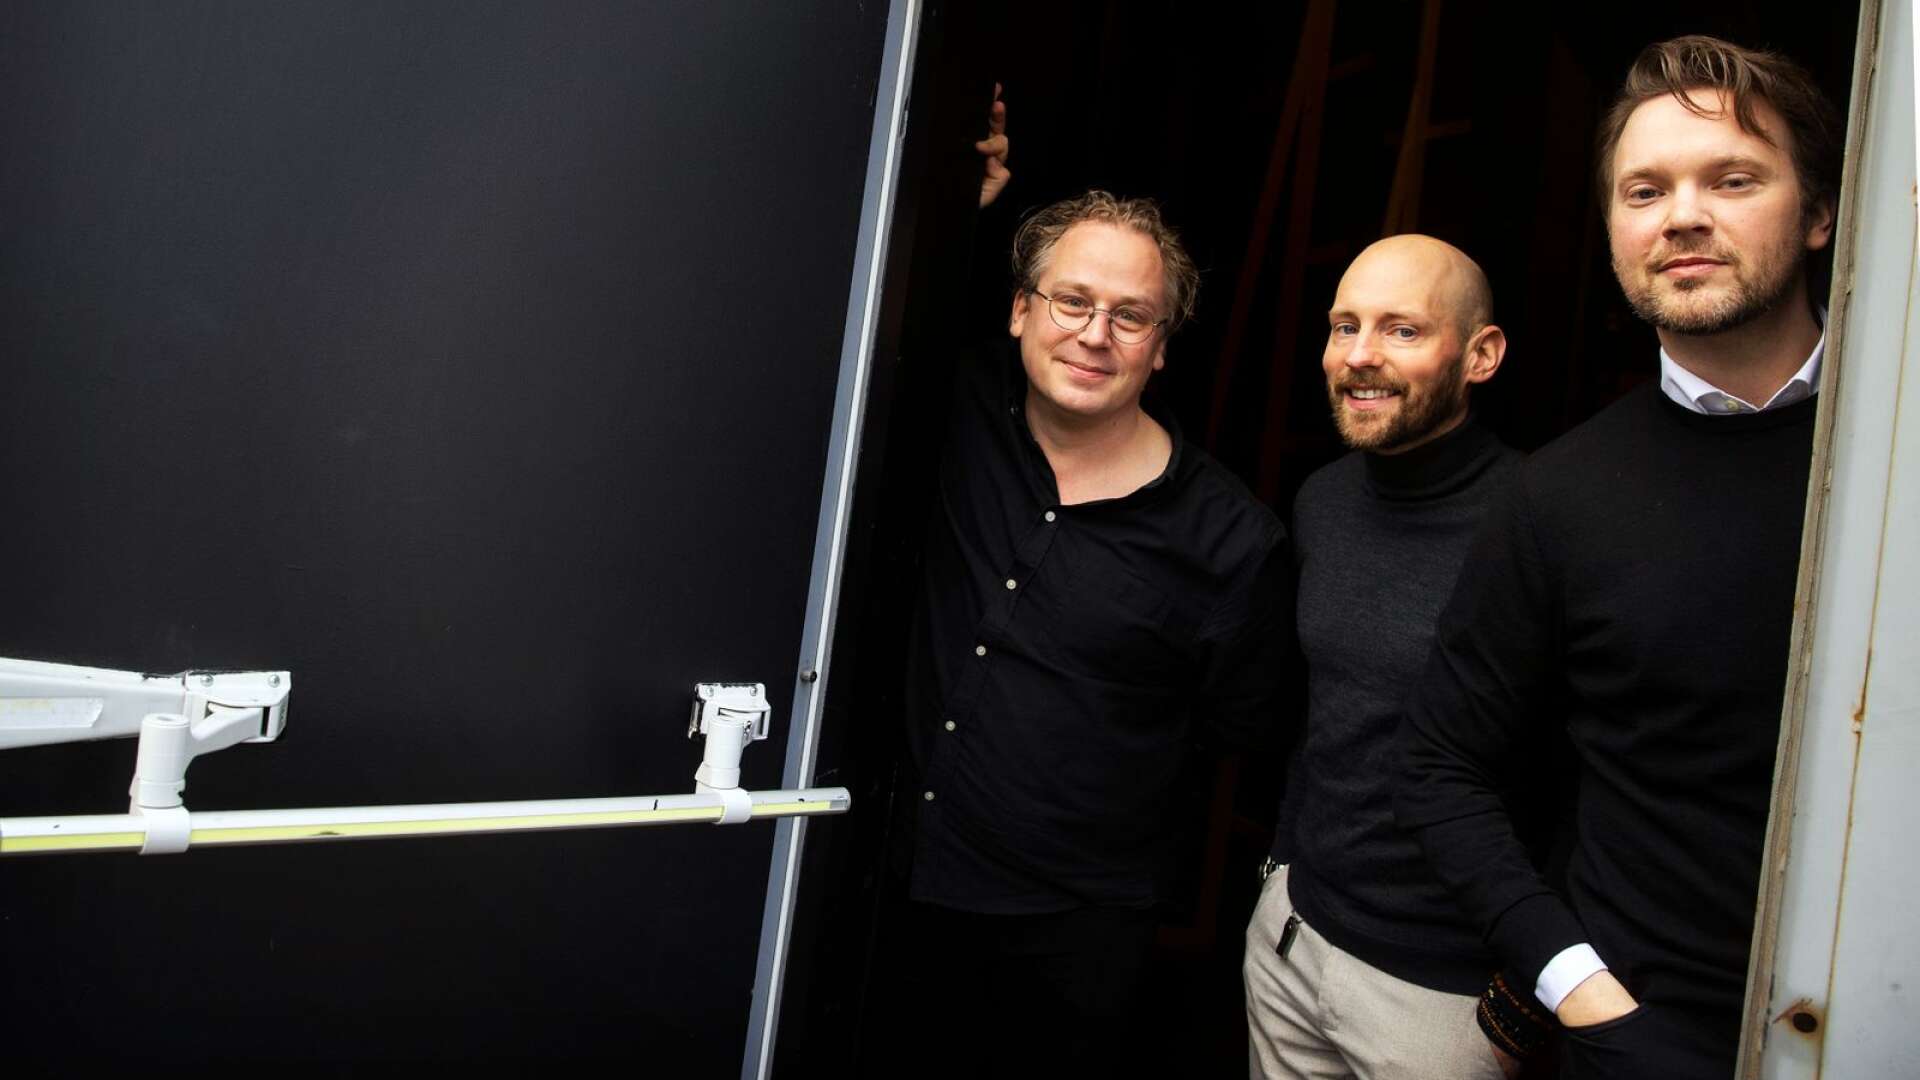 Markus Virta, Pierre Oxenryd och Johan Hwatz är upphovsmännen bakom det som ska bli en helt ny musikal, baserad på succéboken Hundraåringen som klev ut genom ett fönster och försvann.